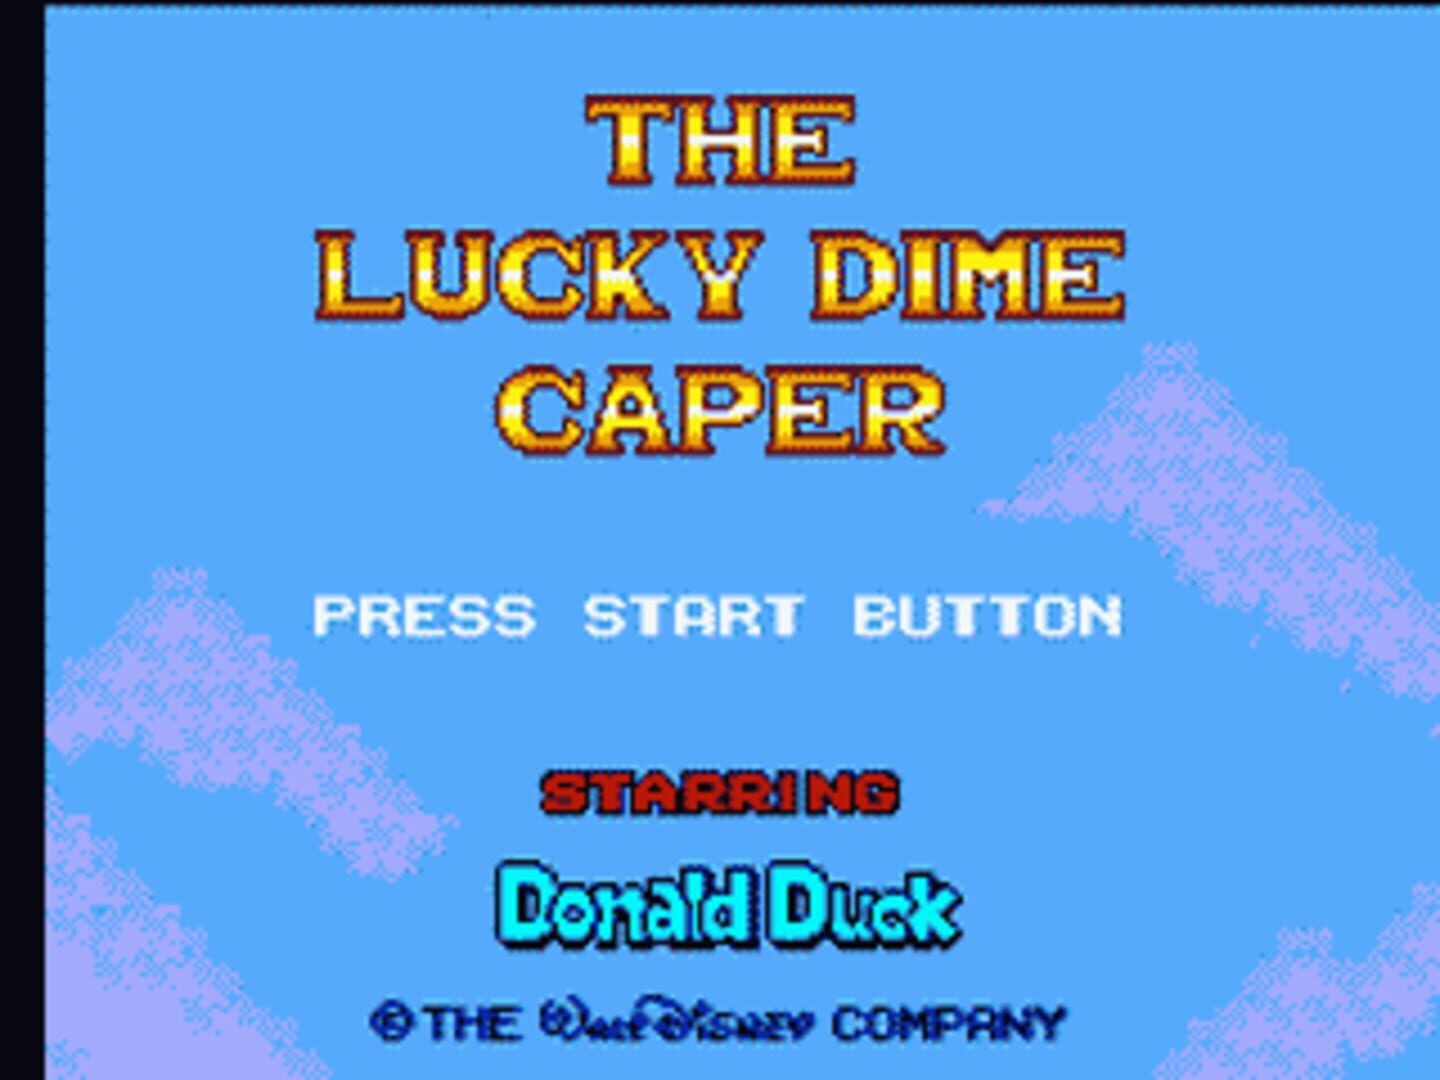 Captura de pantalla - The Lucky Dime Caper starring Donald Duck